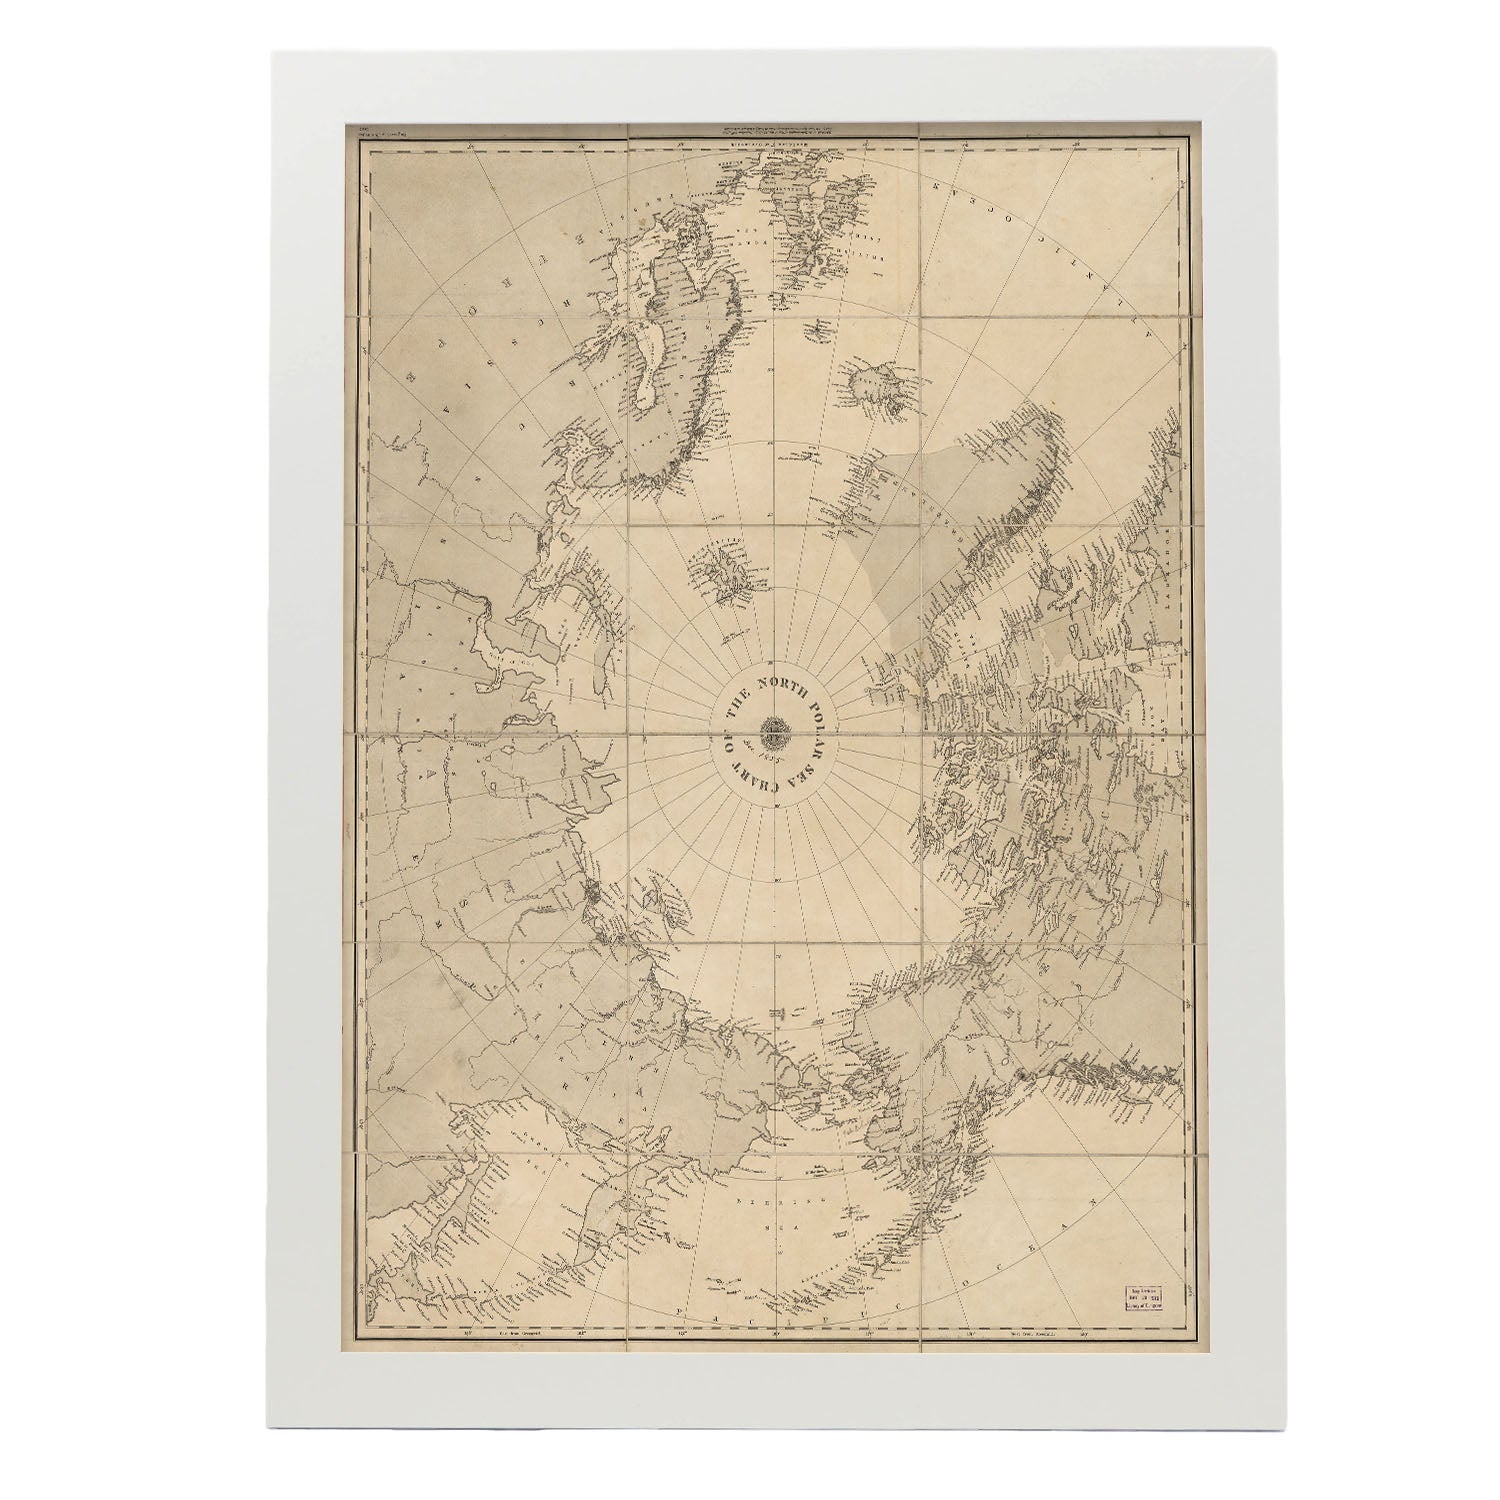 Chart_of_the_North_Polar_Sea_1855-Artwork-Nacnic-A3-Marco Blanco-Nacnic Estudio SL